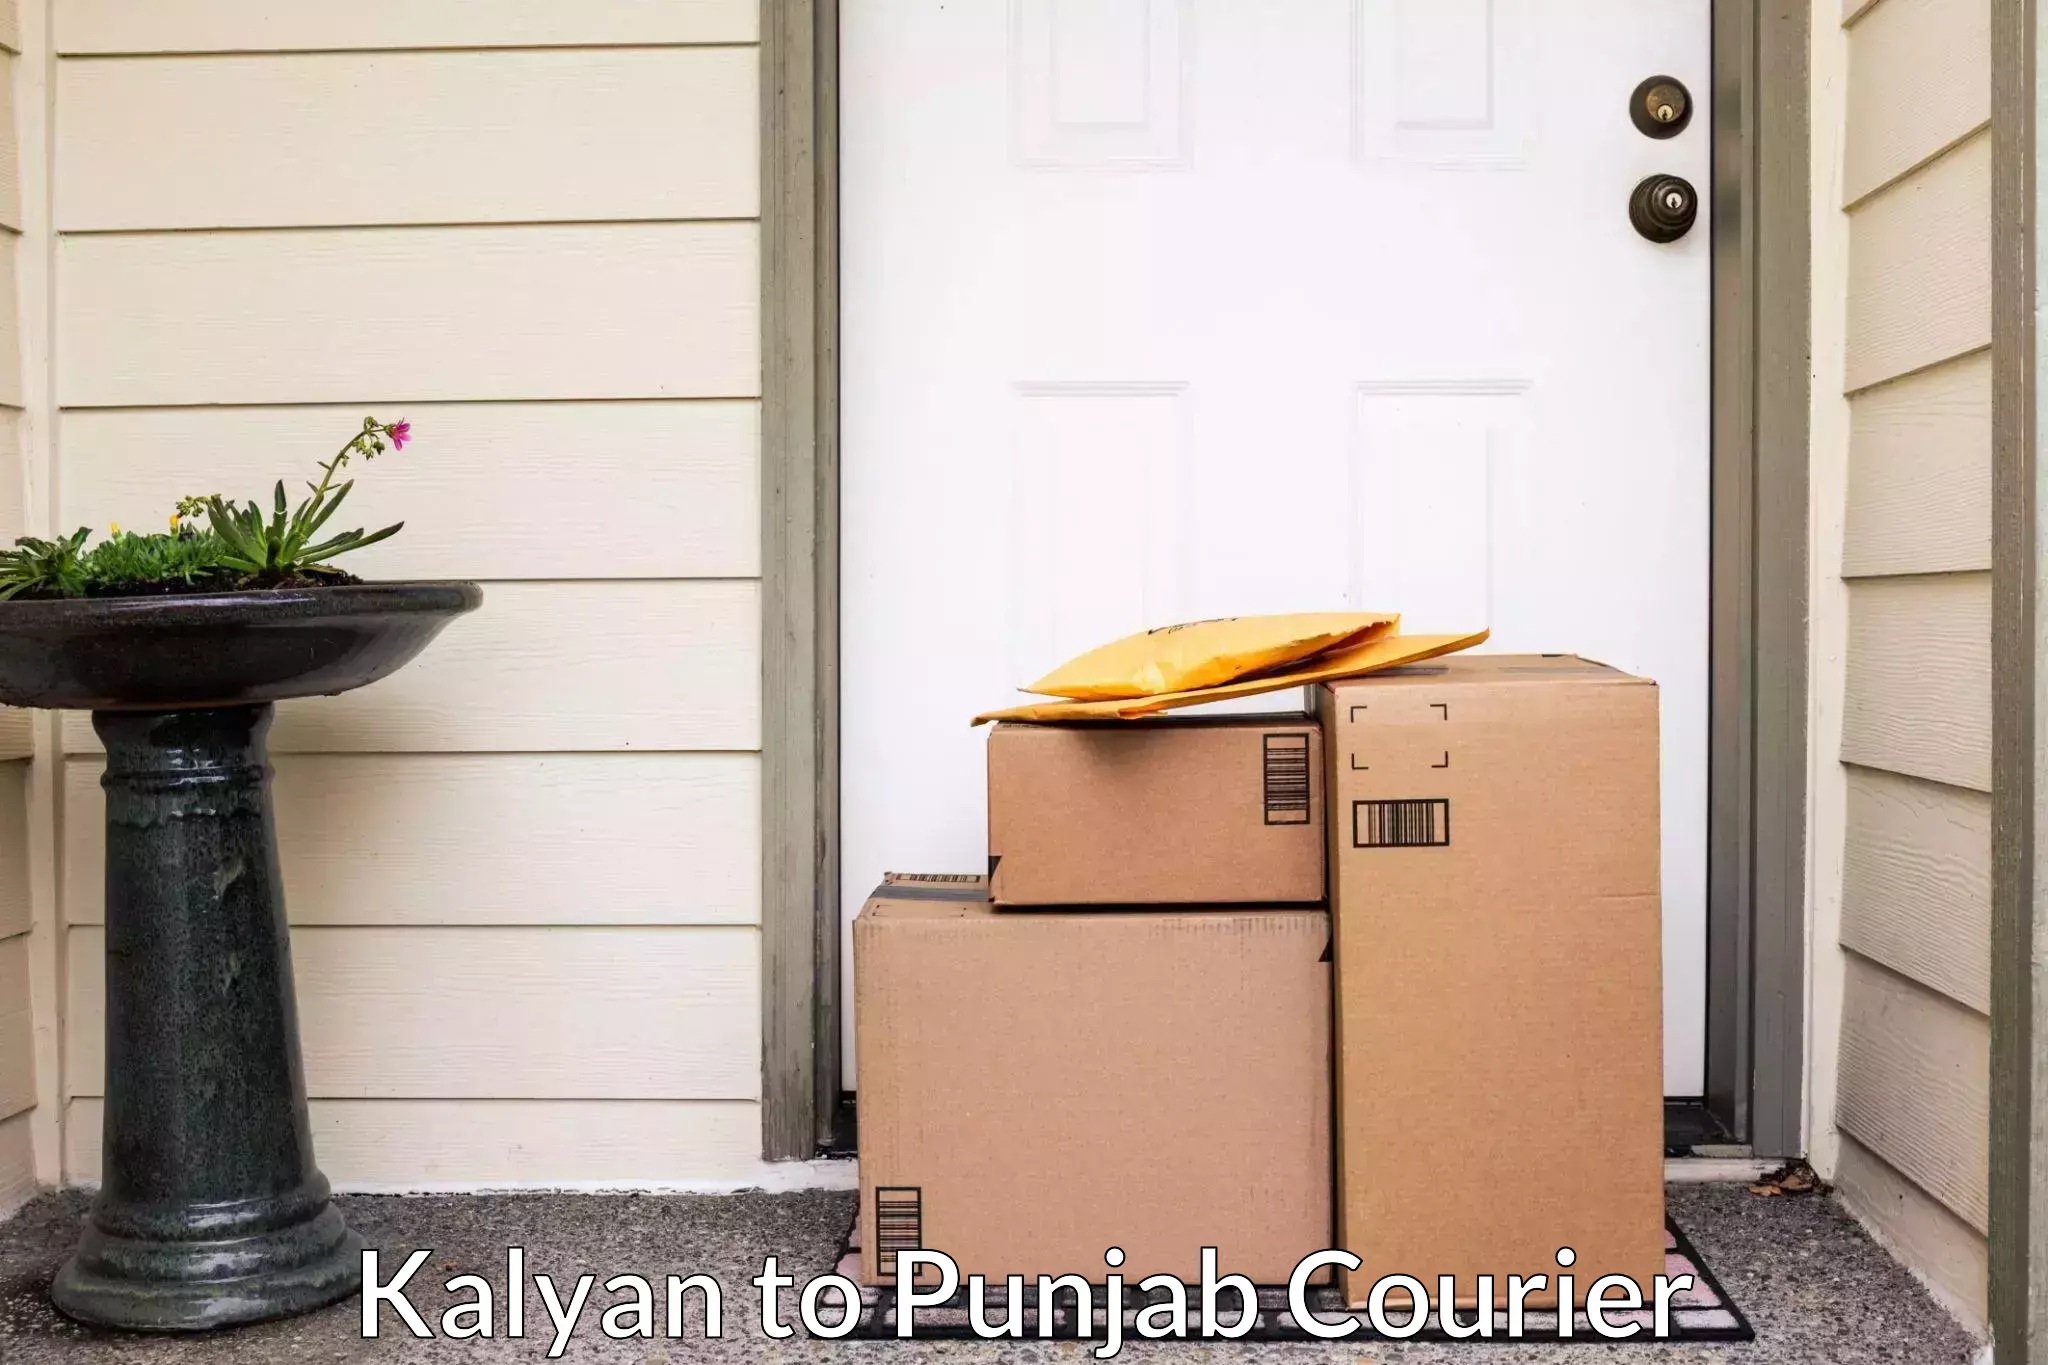 Furniture transport professionals Kalyan to Punjab